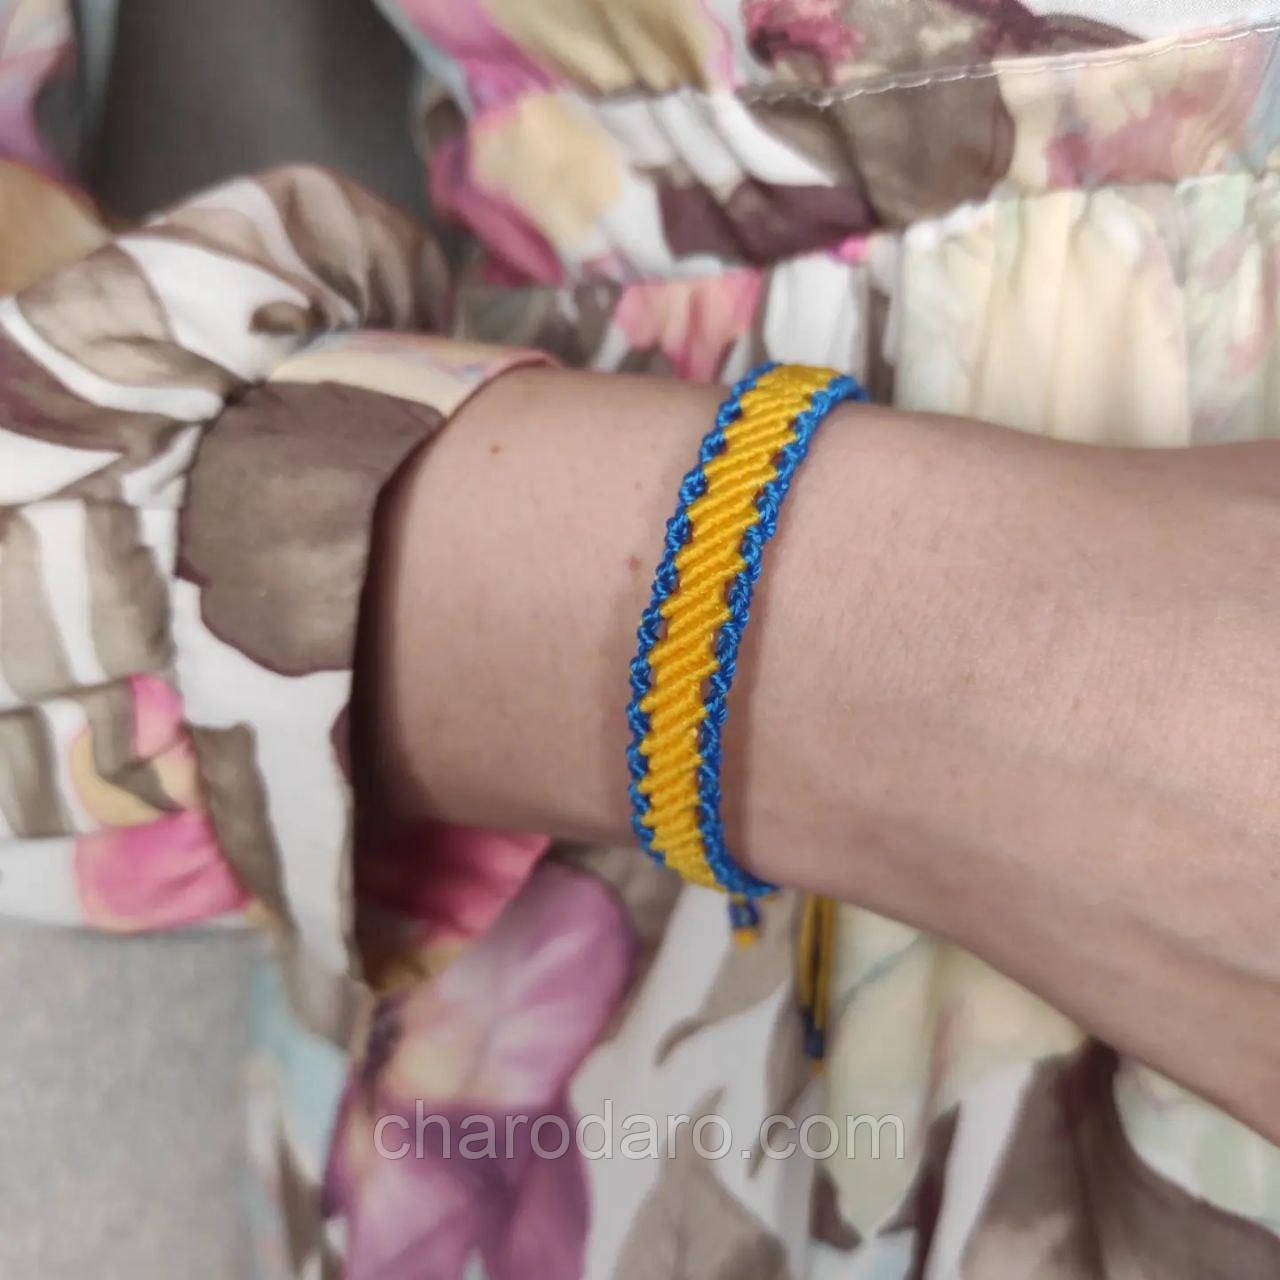 Жіночий браслет ручного плетіння макраме "Ратибор" CHARO DARO (жовто-синій)